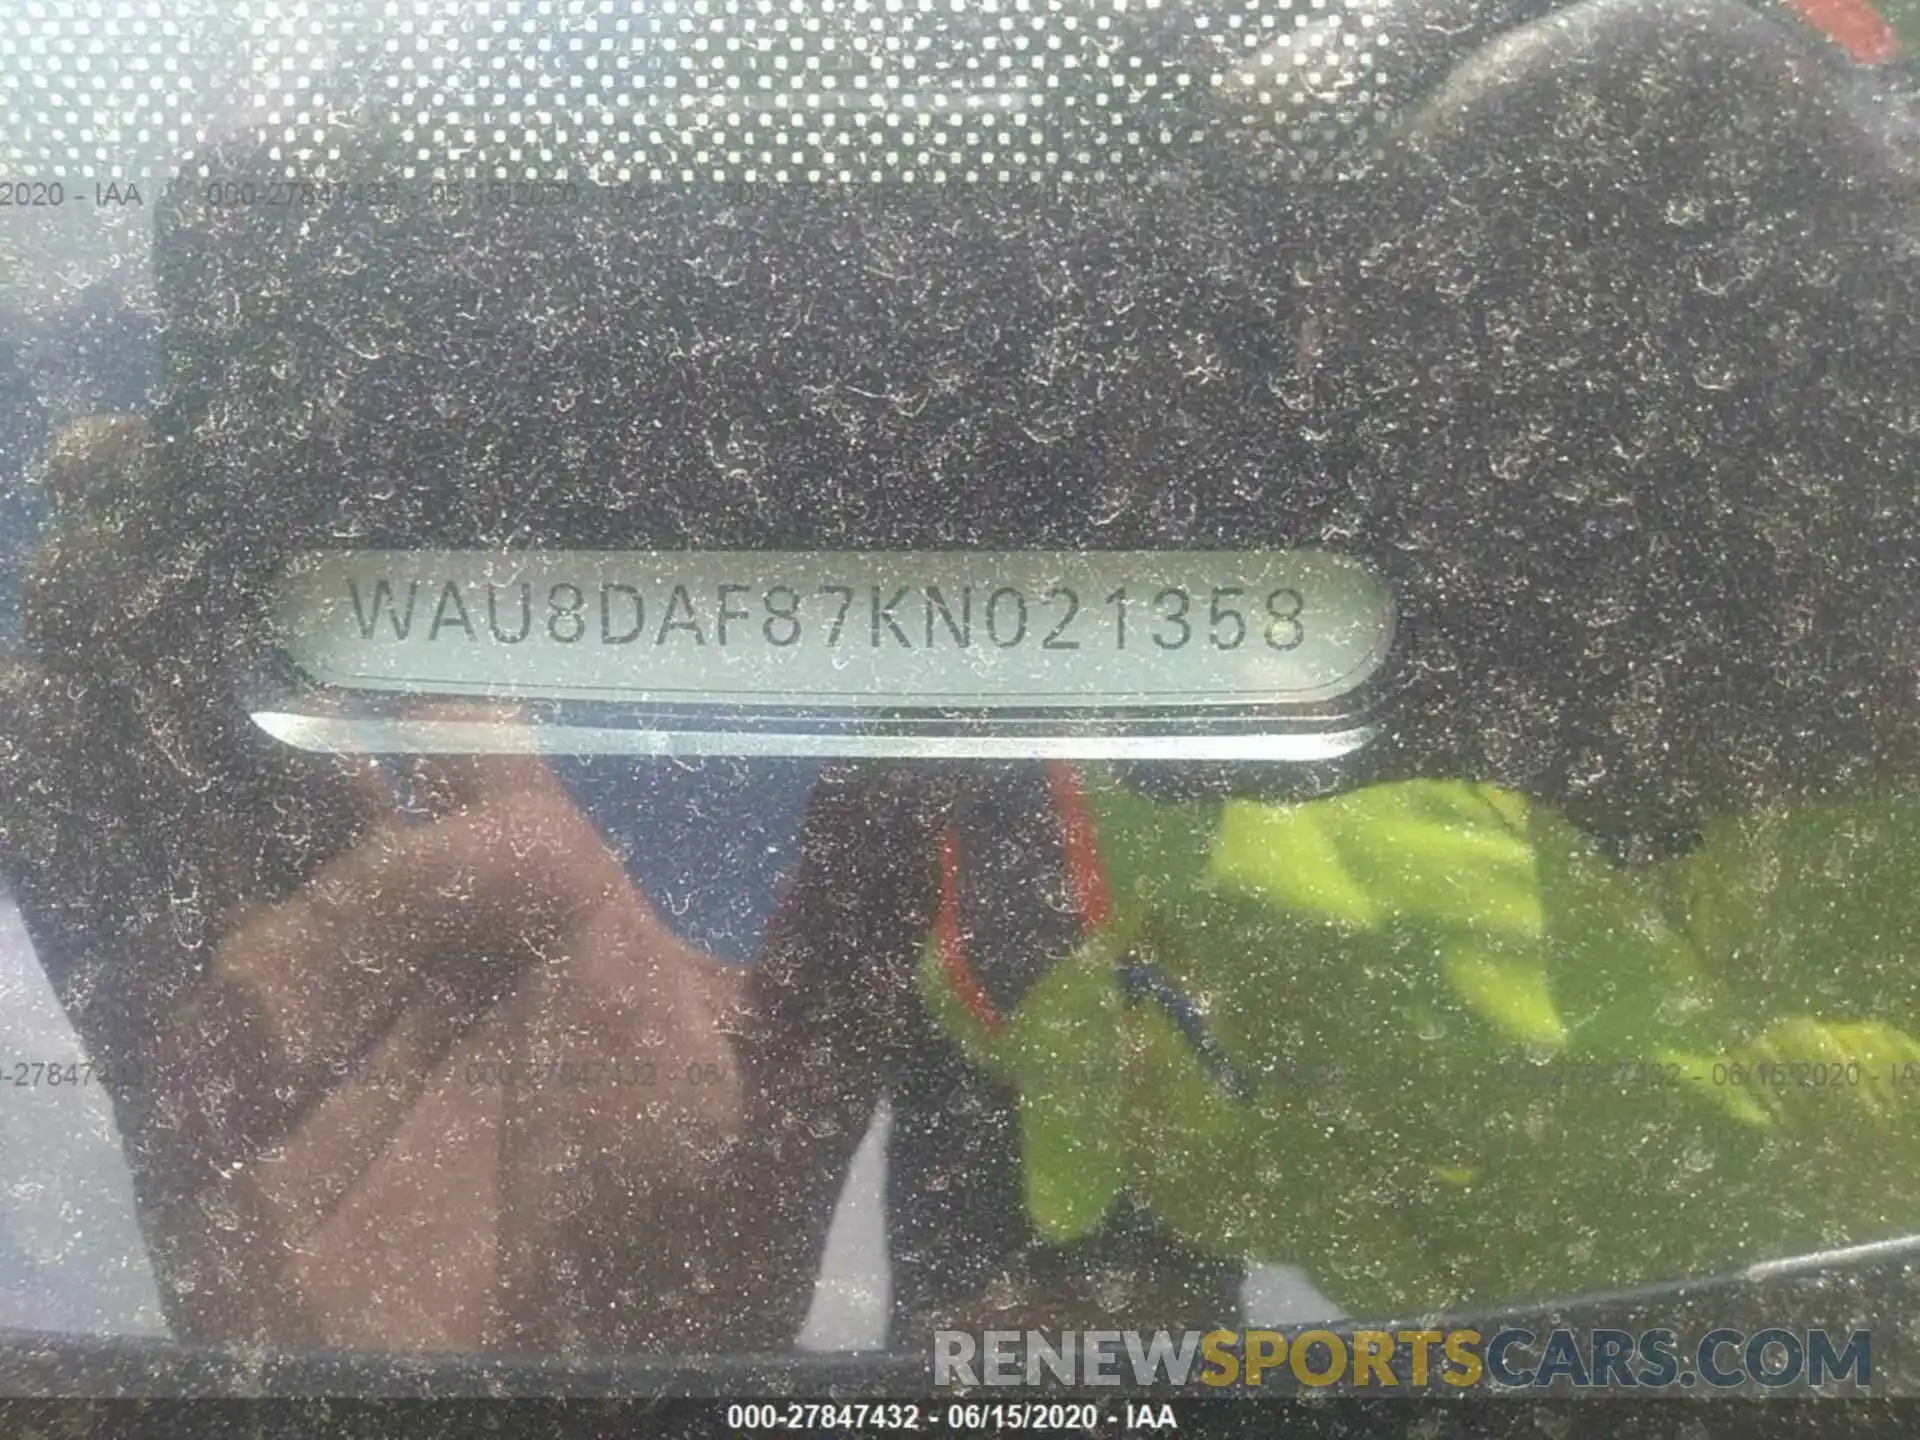 9 Photograph of a damaged car WAU8DAF87KN021358 AUDI A8 2019